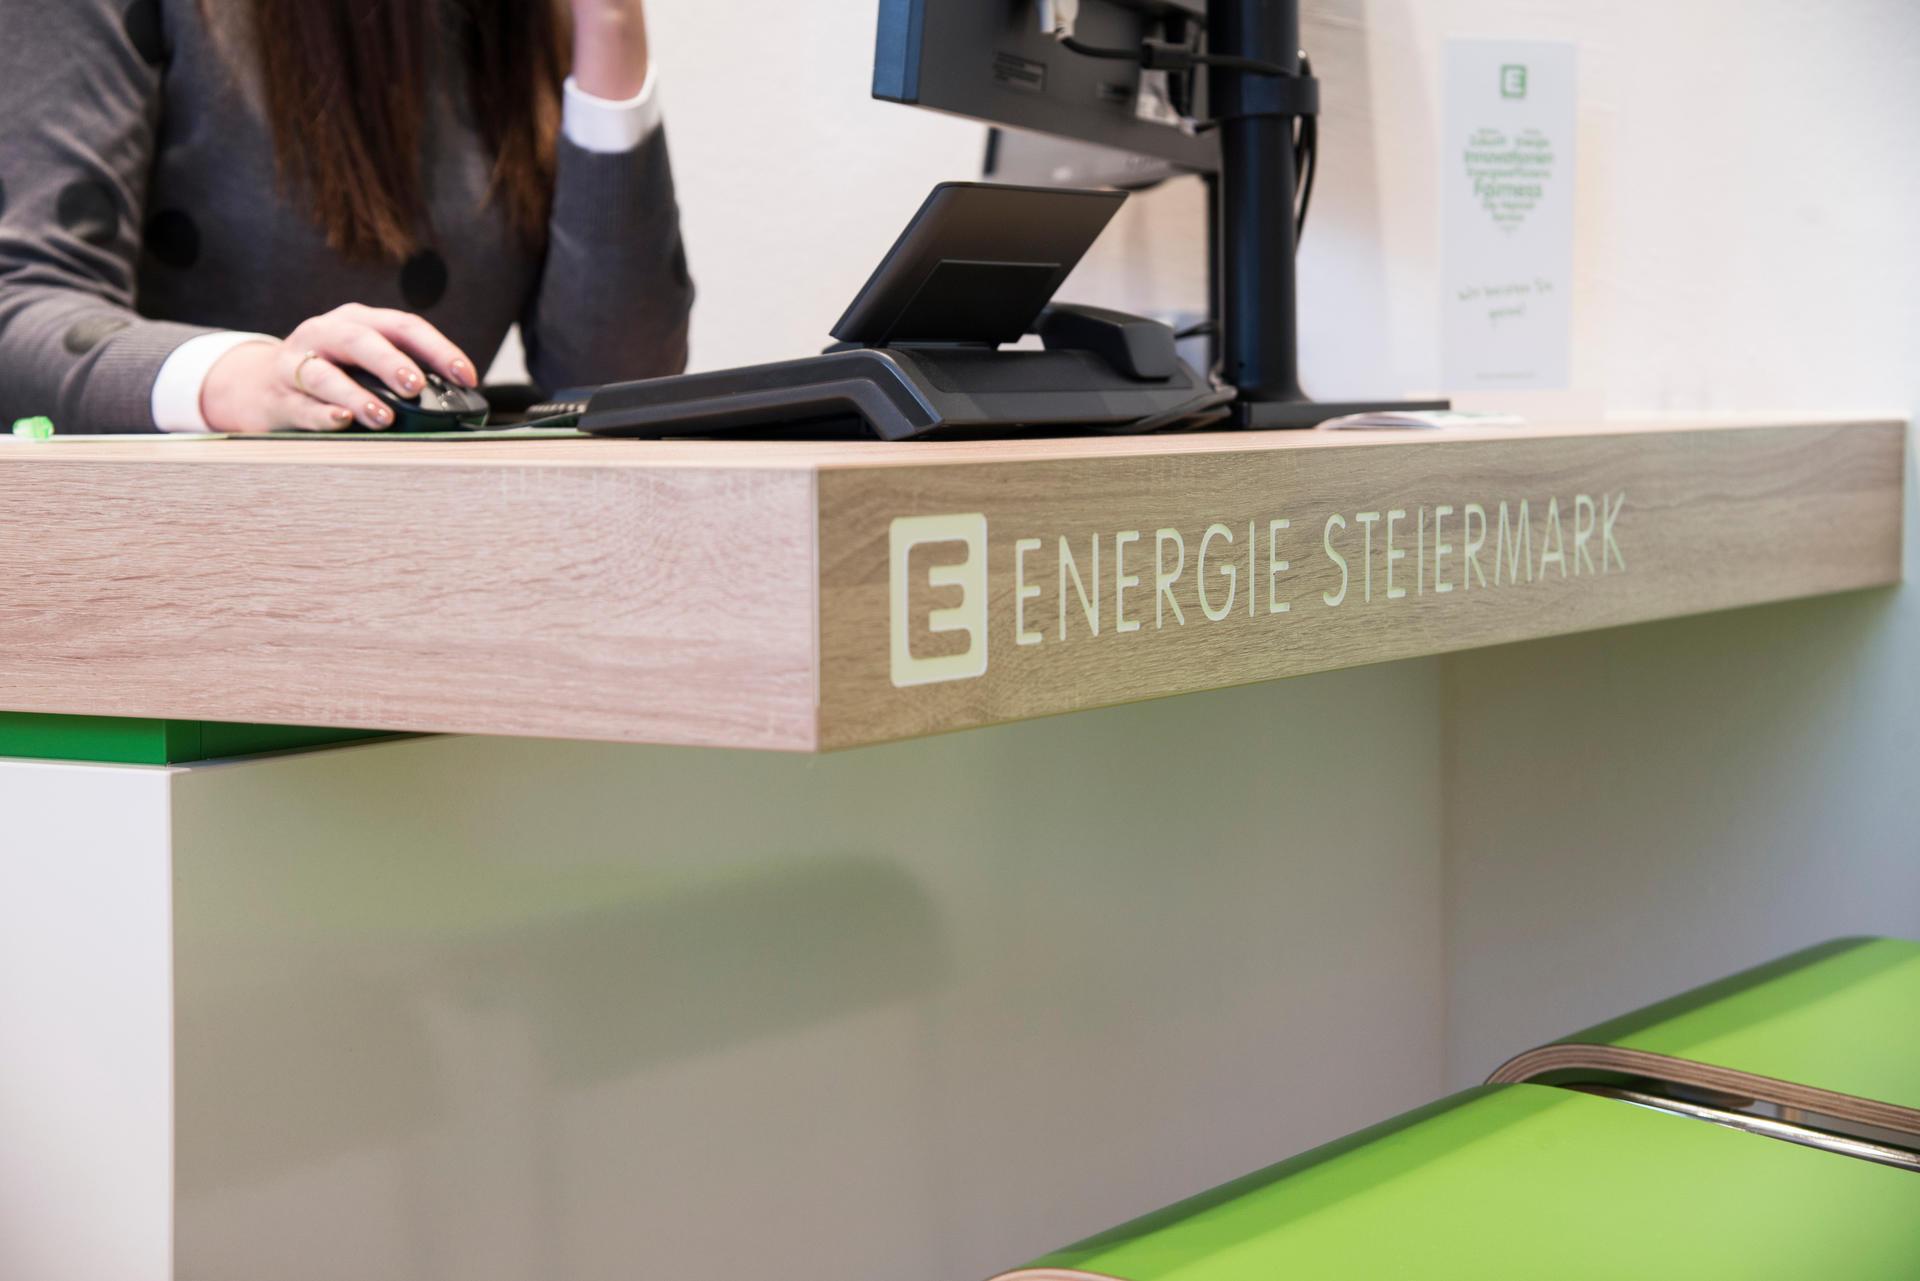 Vorschau - Foto 1 von Energie Steiermark E-Kunden-Center